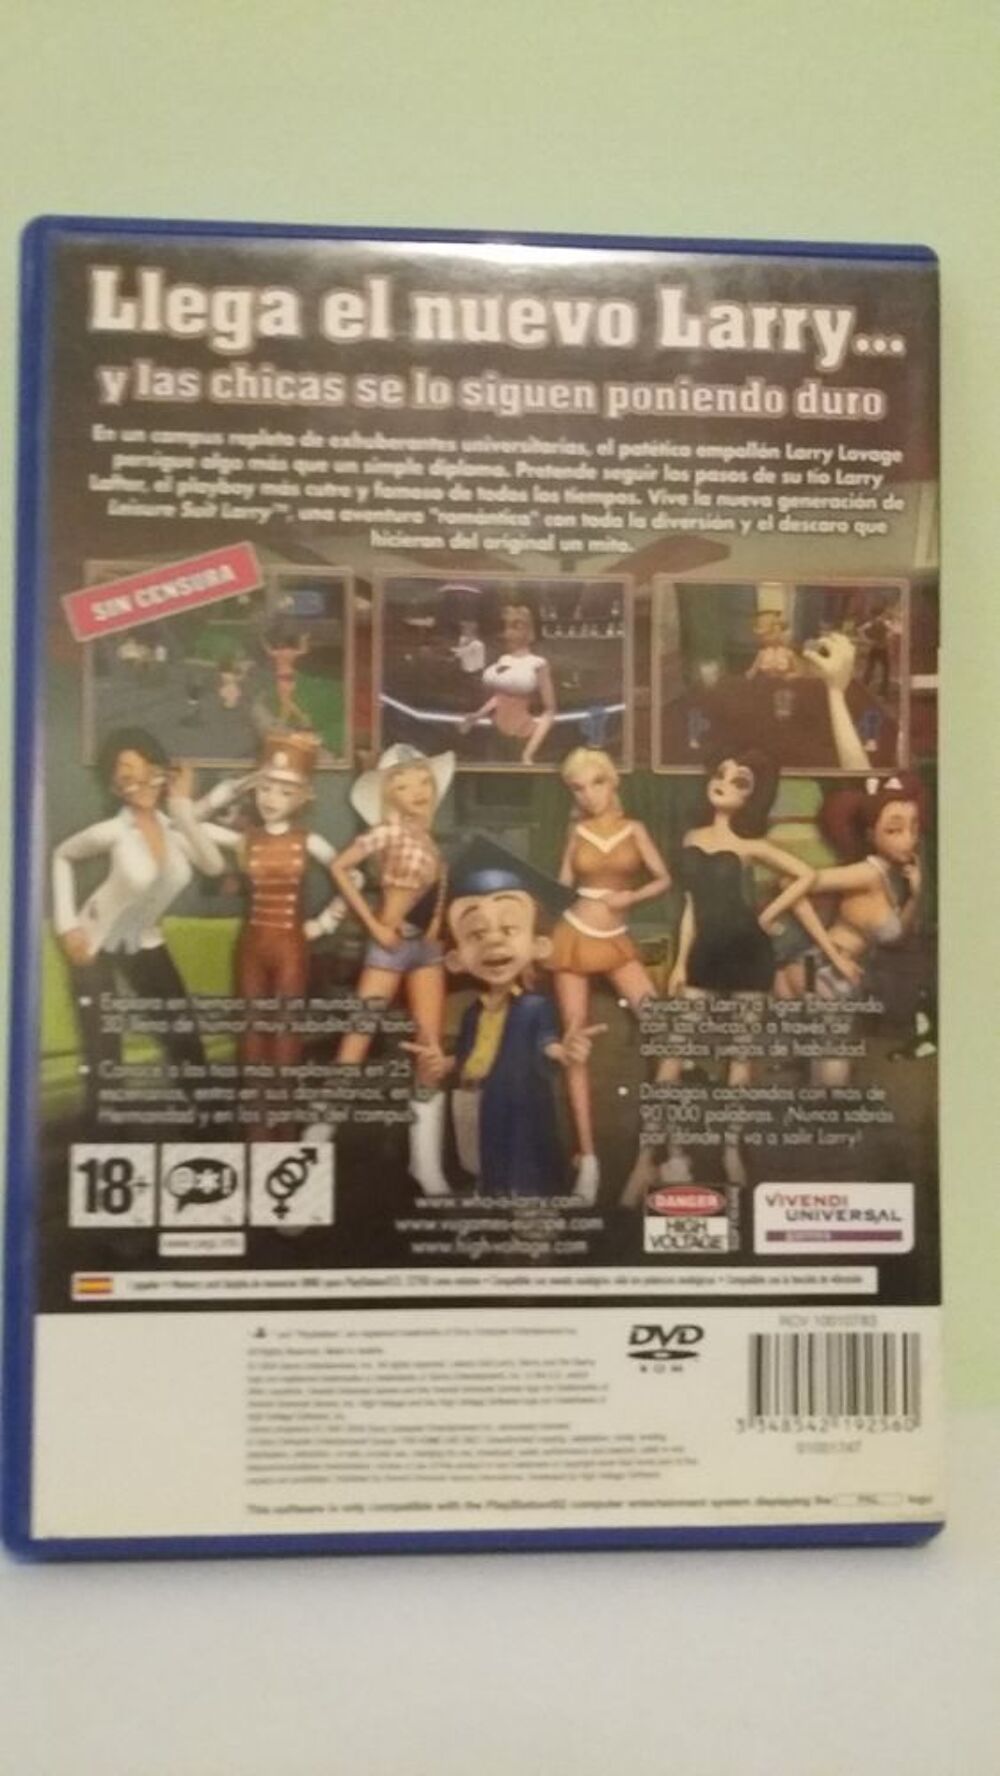 Jeu PS2 : Leisure Suit Larry Consoles et jeux vidos